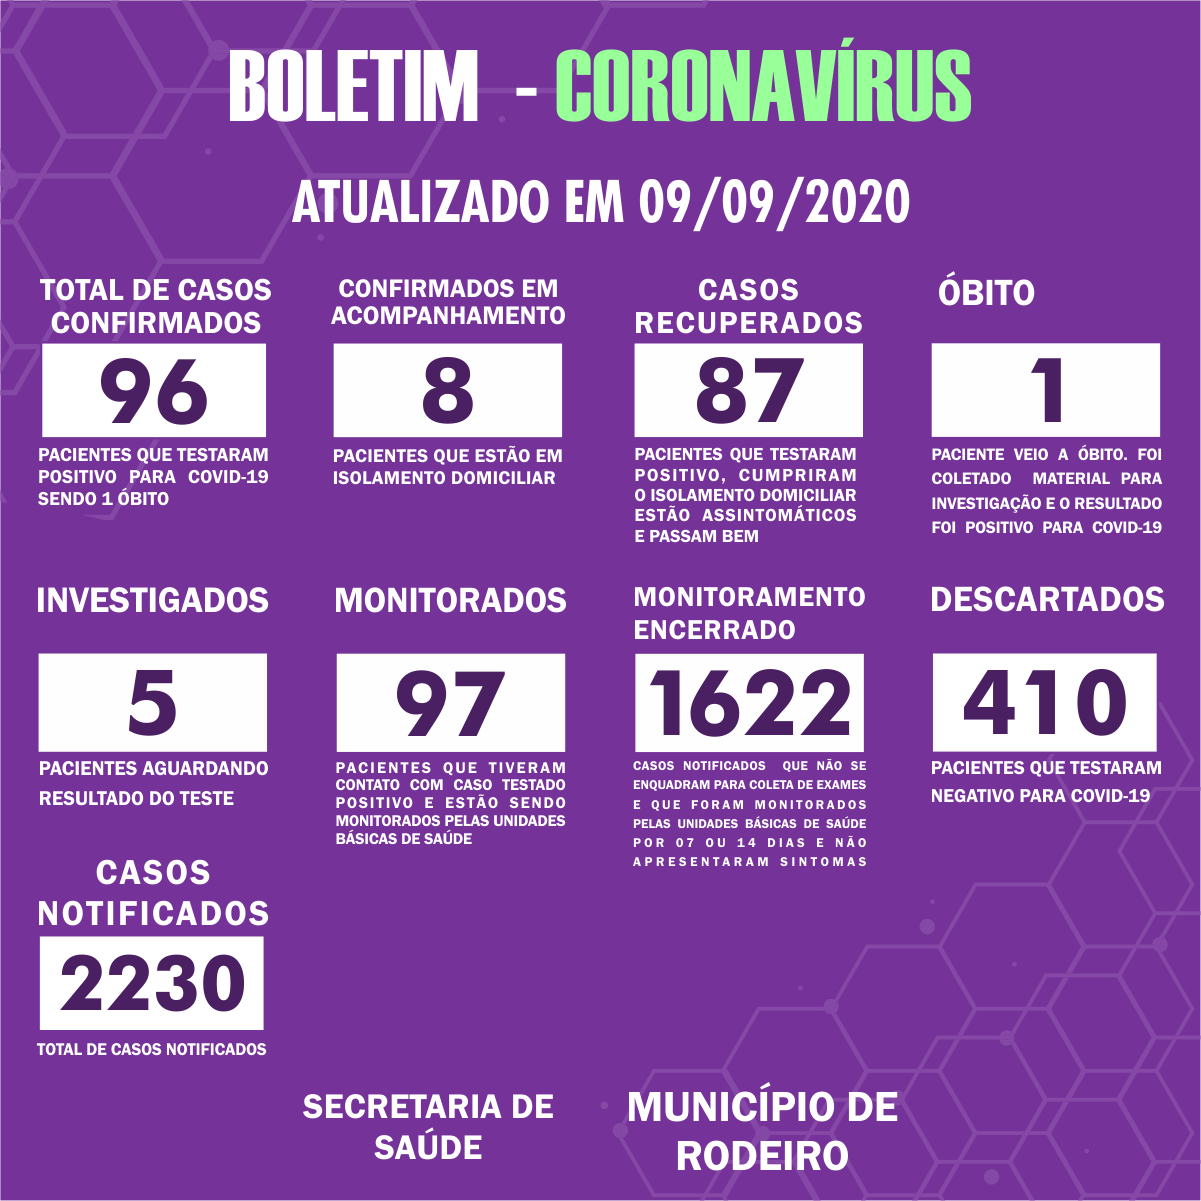 Boletim Epidemiológico do Município de Rodeiro sobre coronavírus, atualizado em 09/09/2020